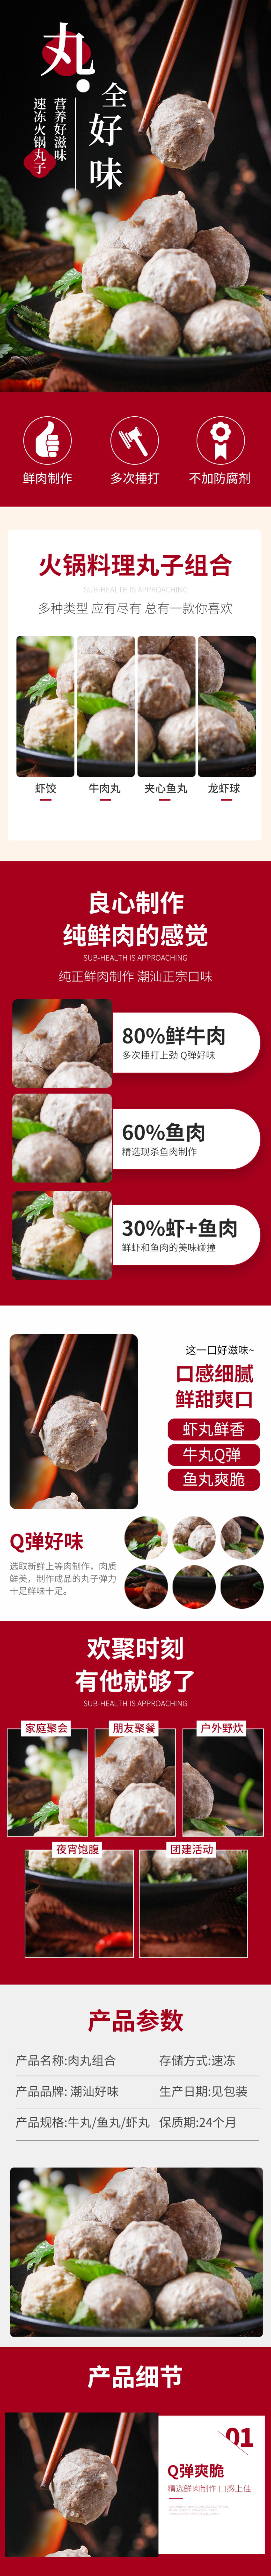 潮汕牛肉丸广告宣传图片